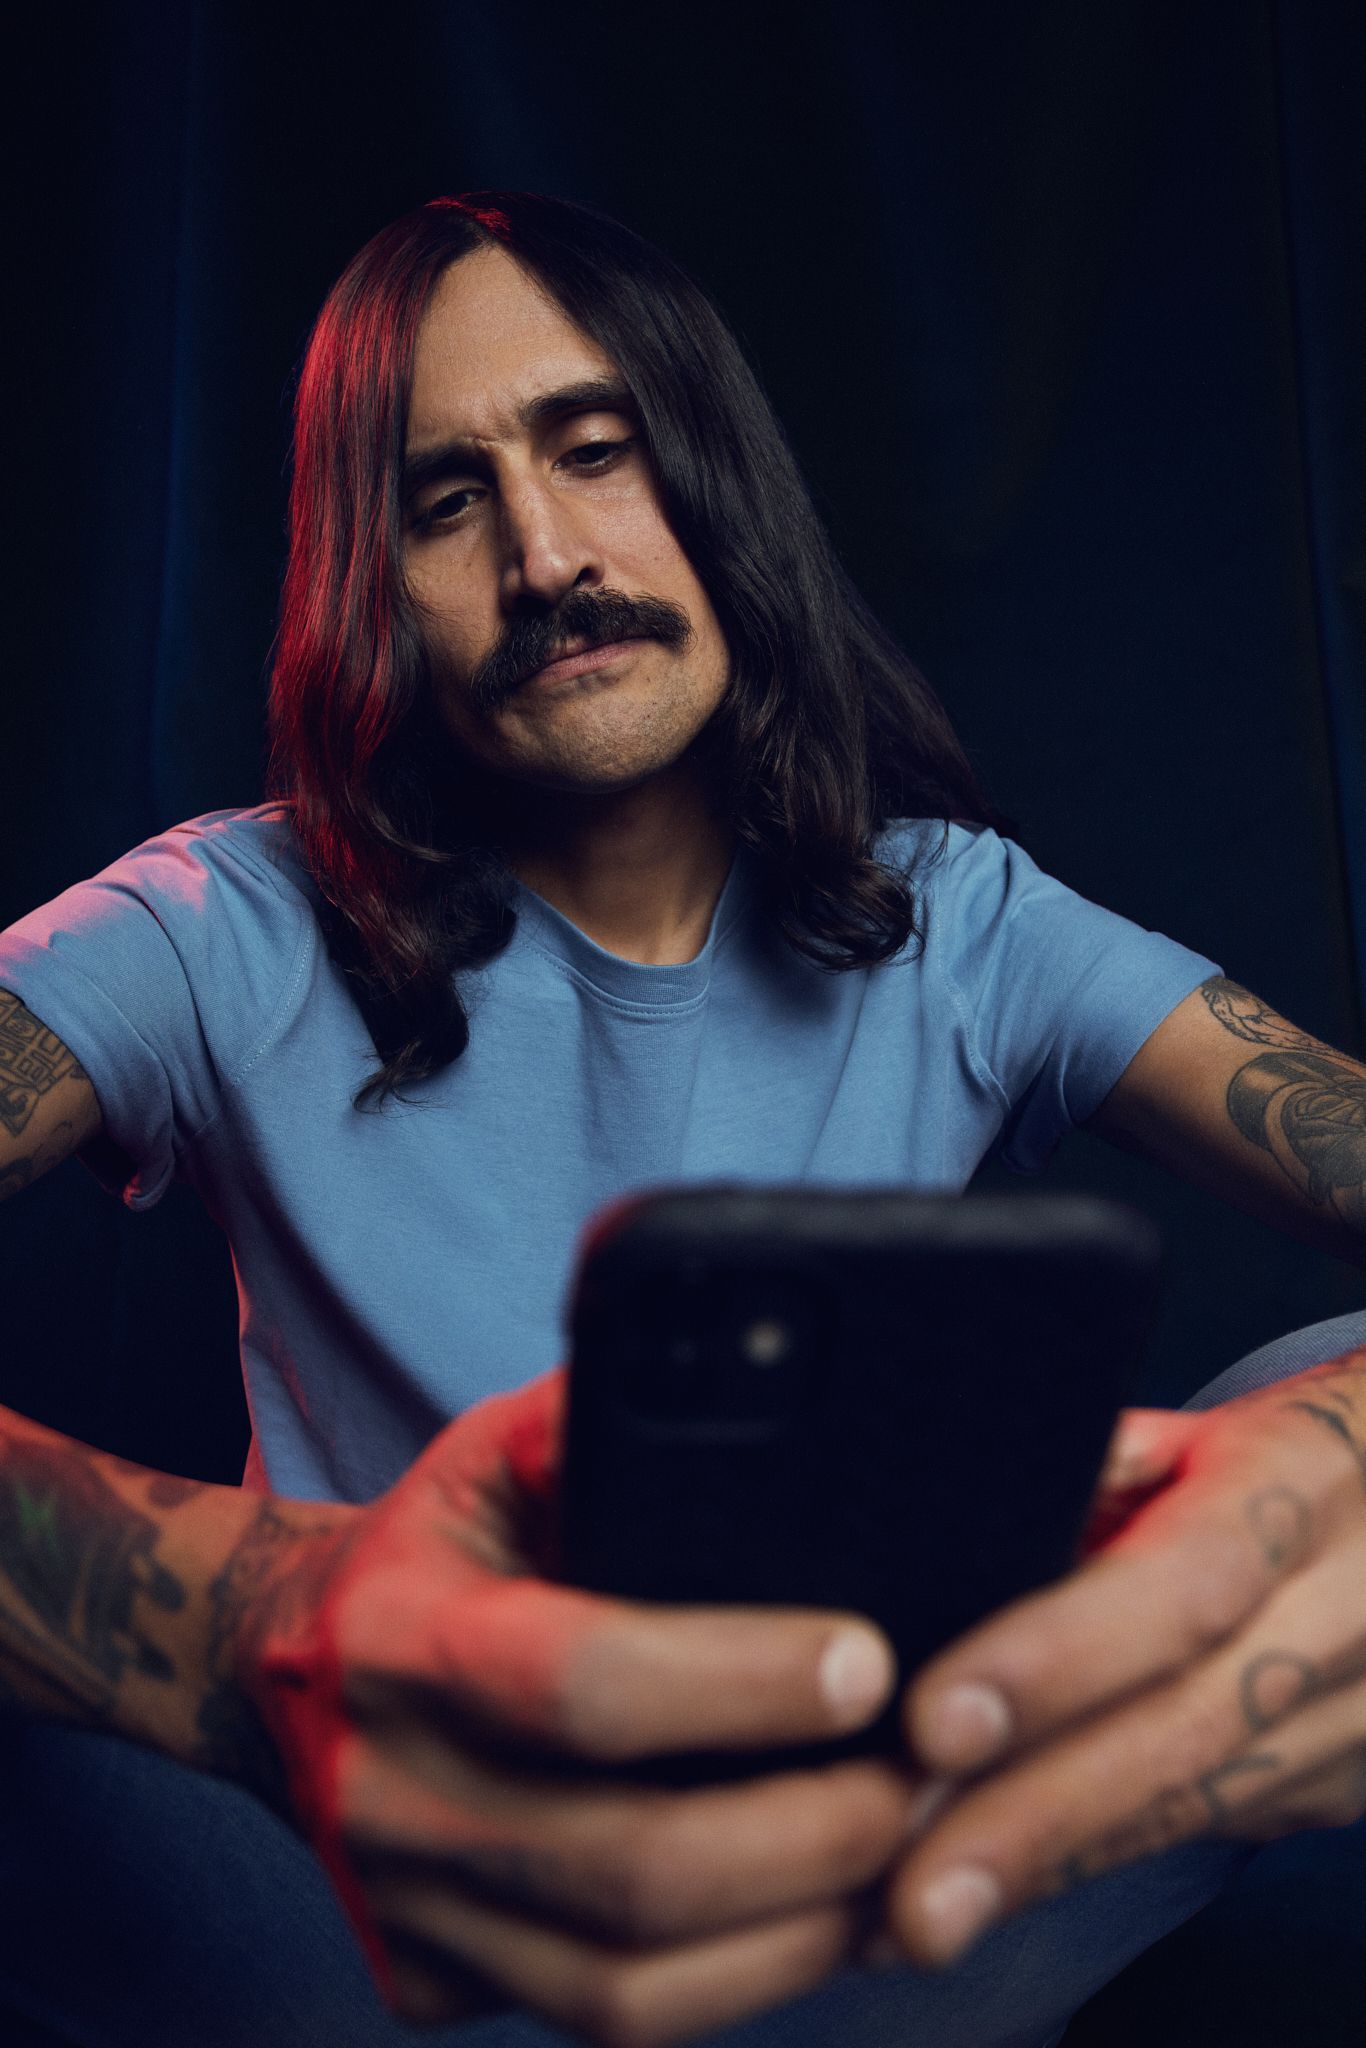 Bilde av mann med langt svart hår og bart som holder mobiltelefon i hånden og søker rammelån